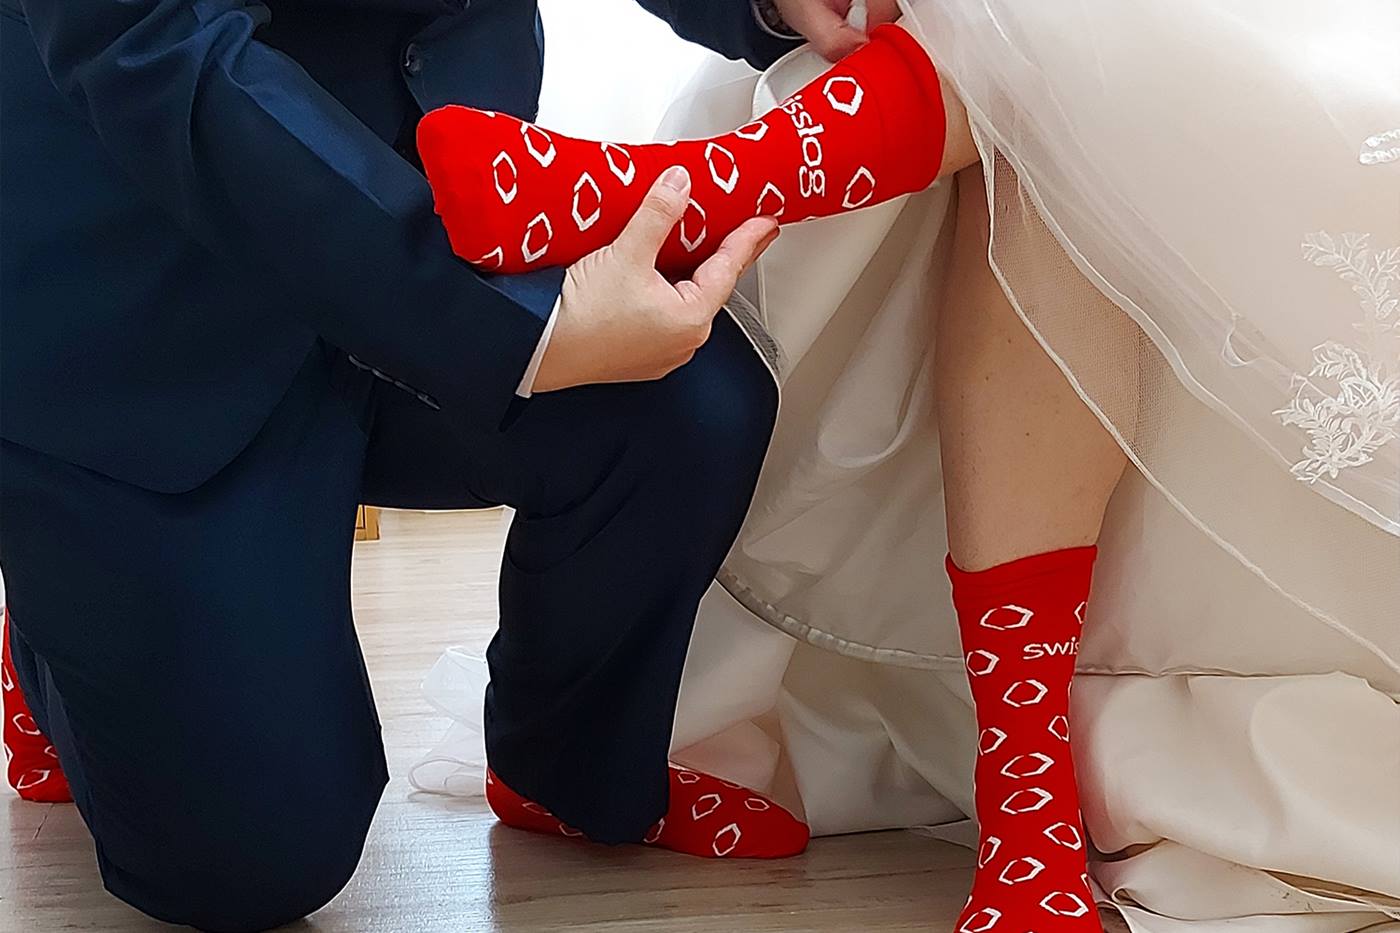 Swisslog socks at a wedding